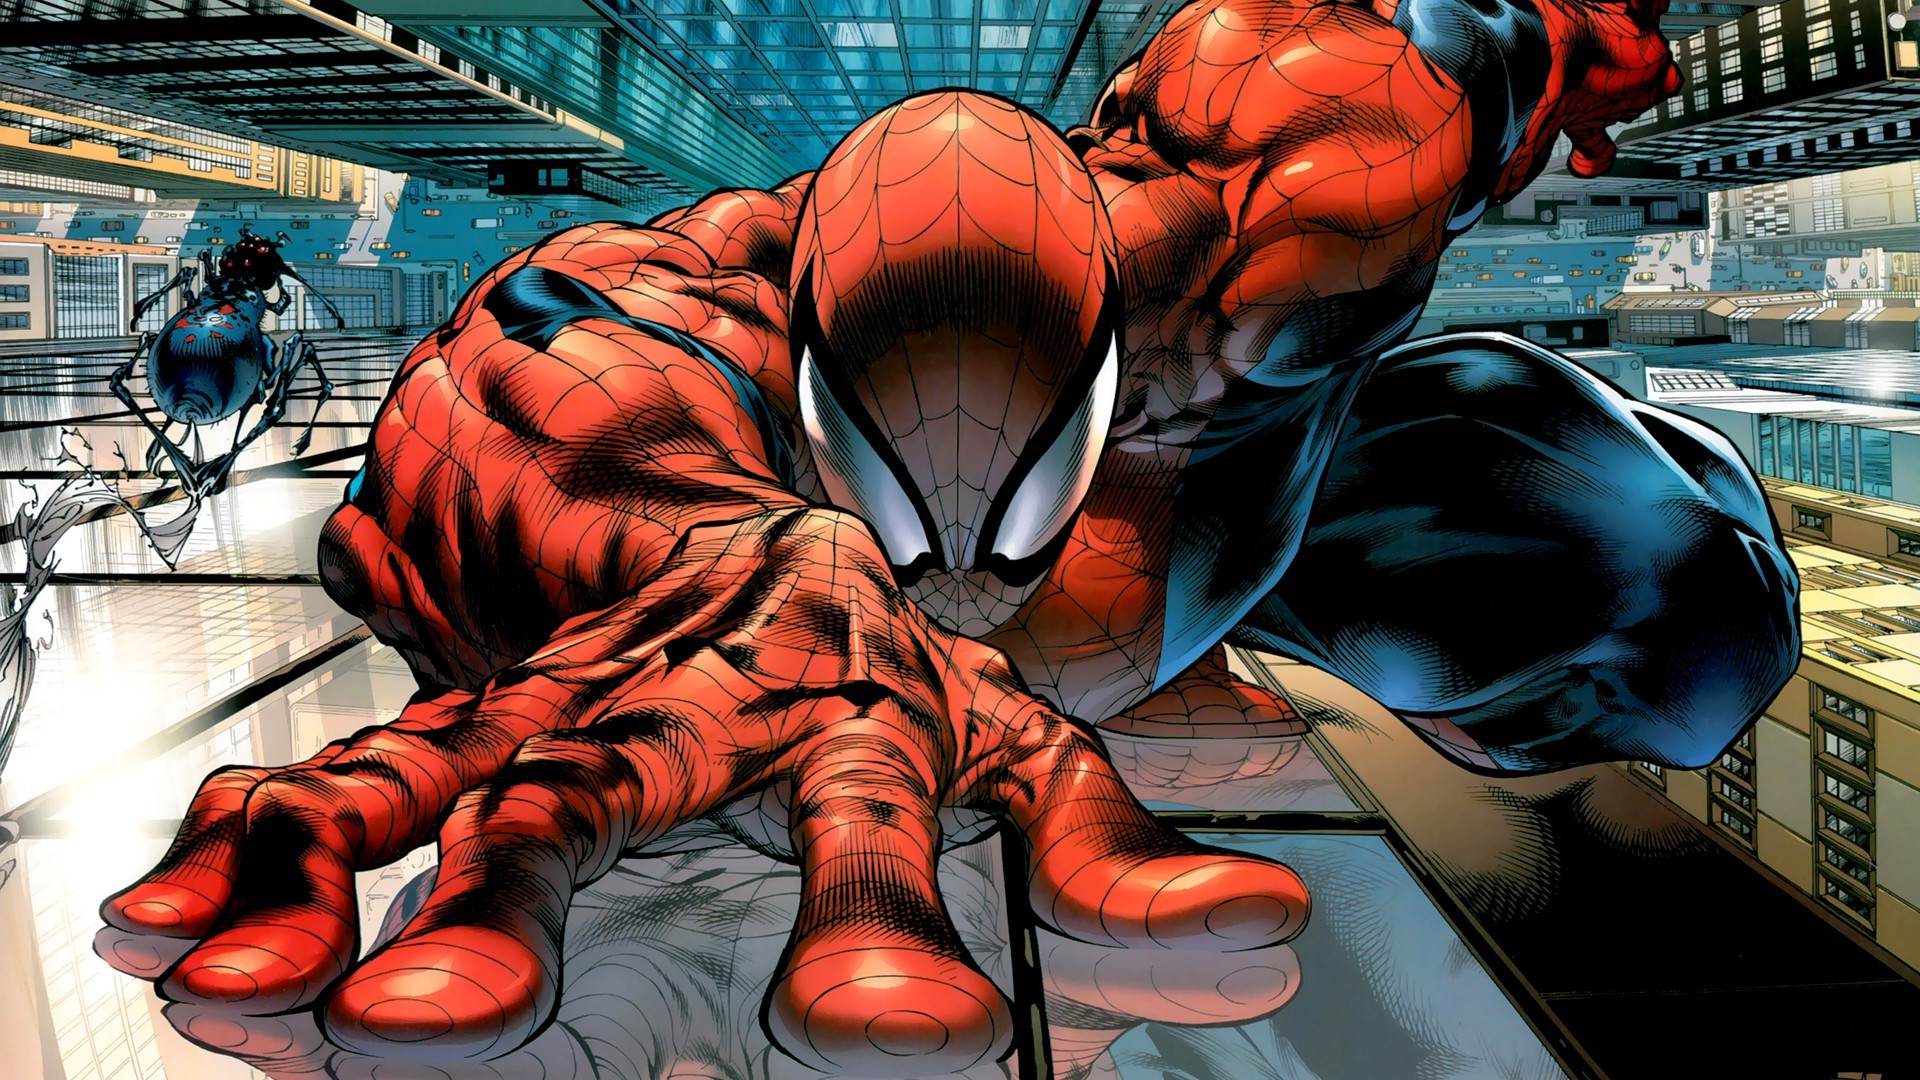 Spider Man, Comic Art, Comics, Superhero, Marvel Comics - Mega Bloks Spiderman Vs Venom - HD Wallpaper 